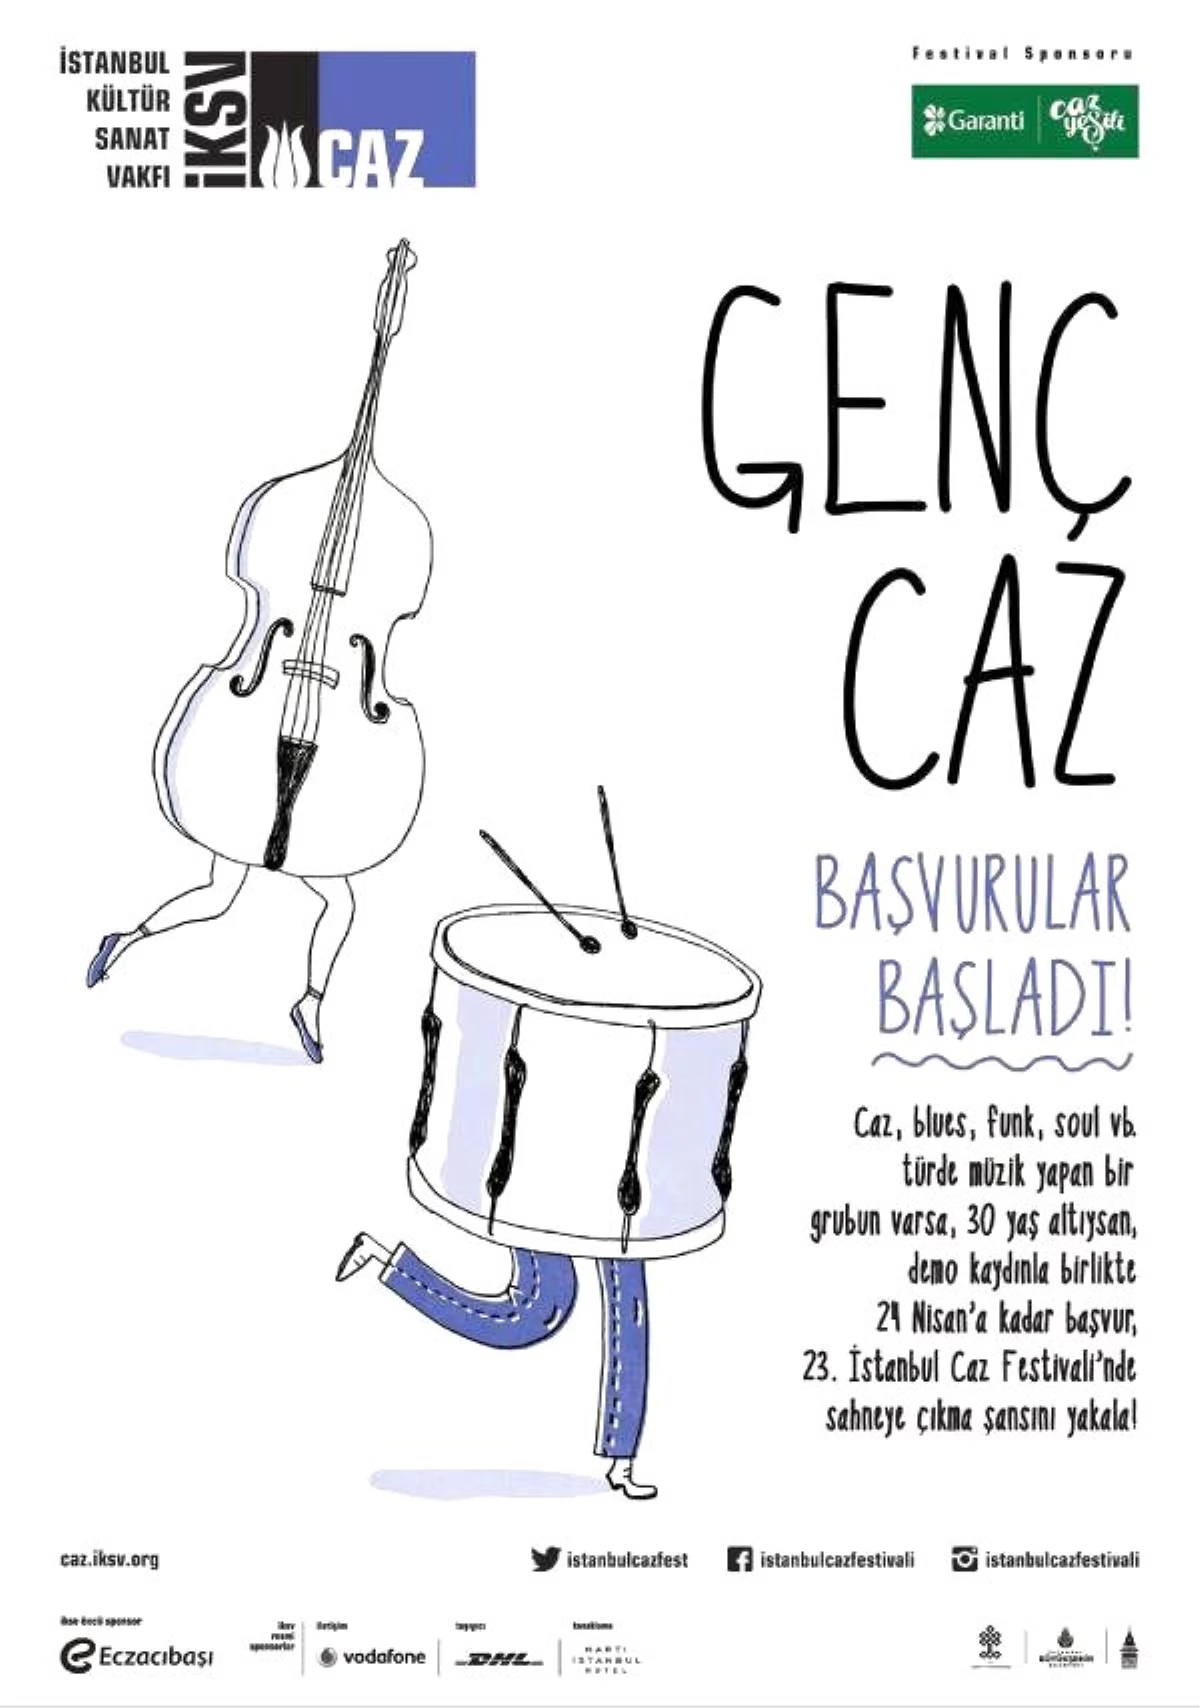 İstanbul Caz Festivali Genç Cazcıları Çağırıyor